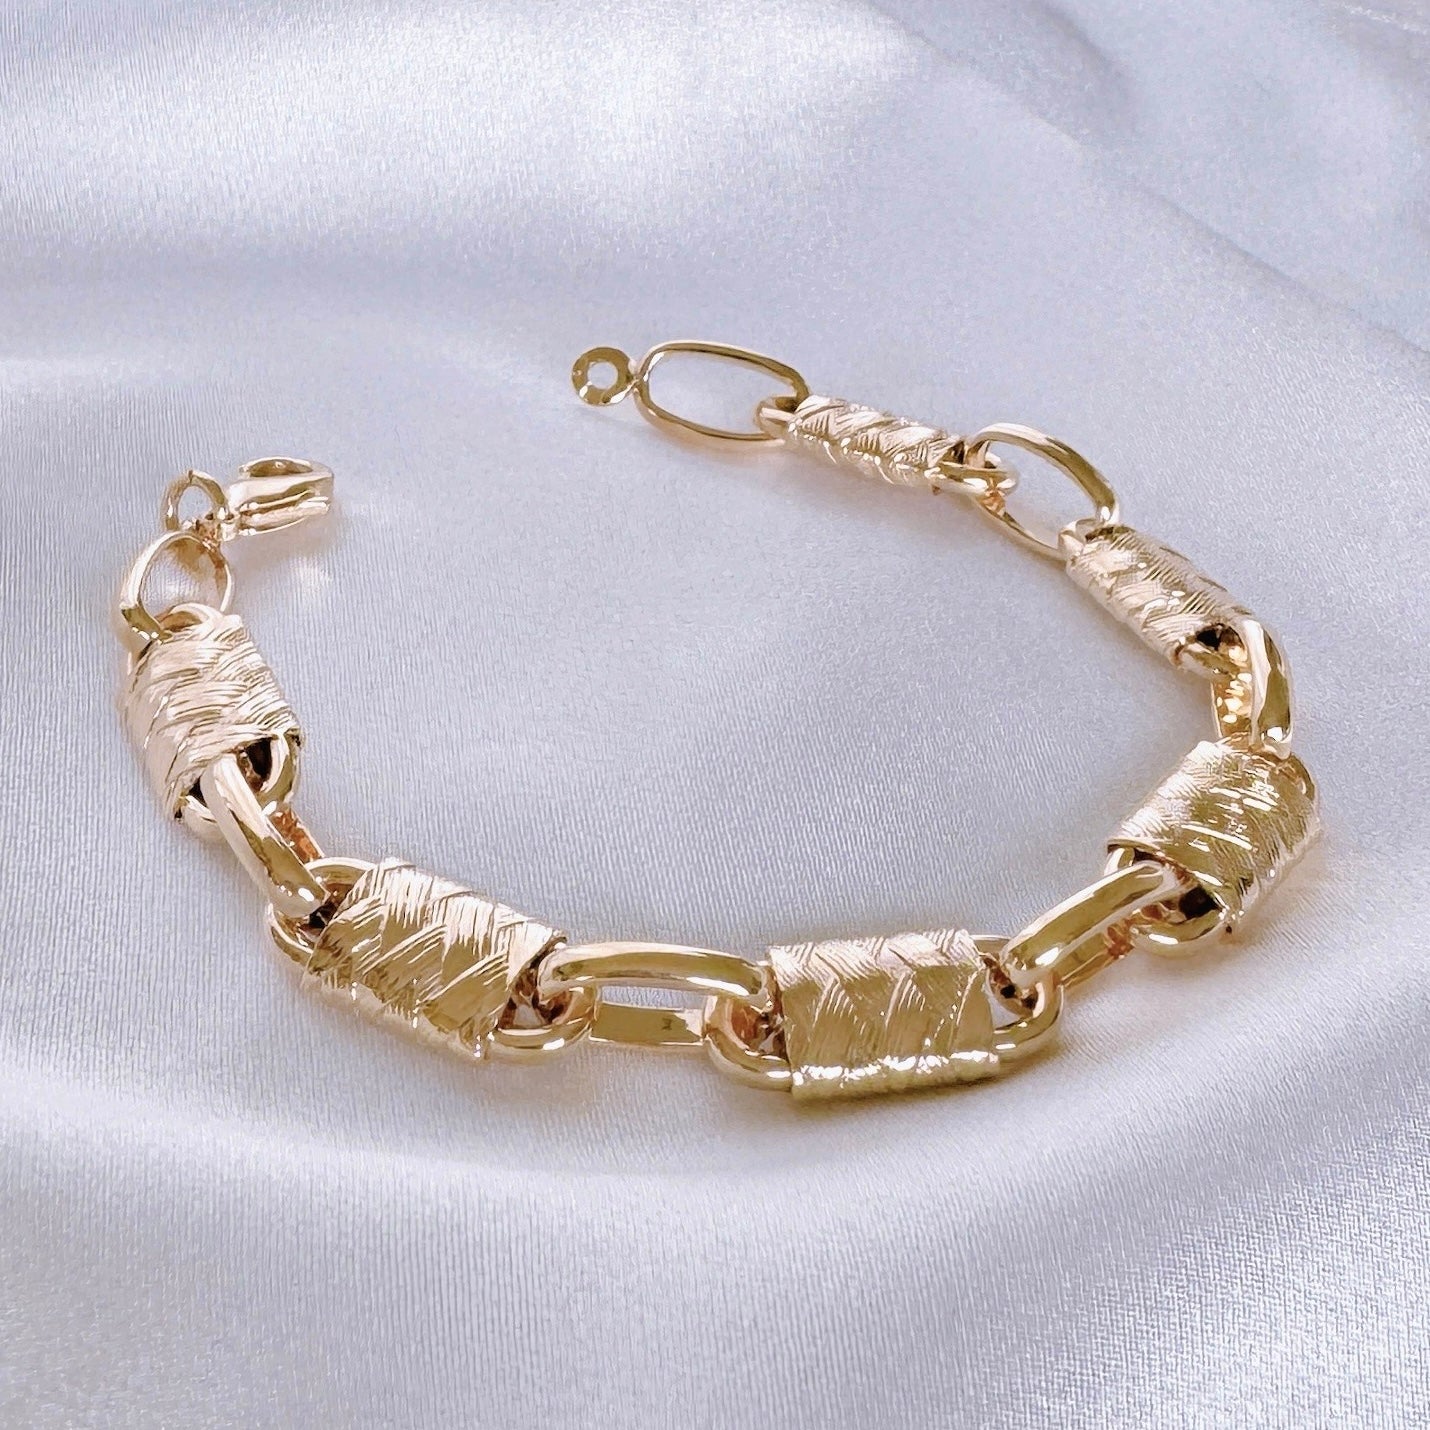 Gold-plated “Fortuna” bracelet